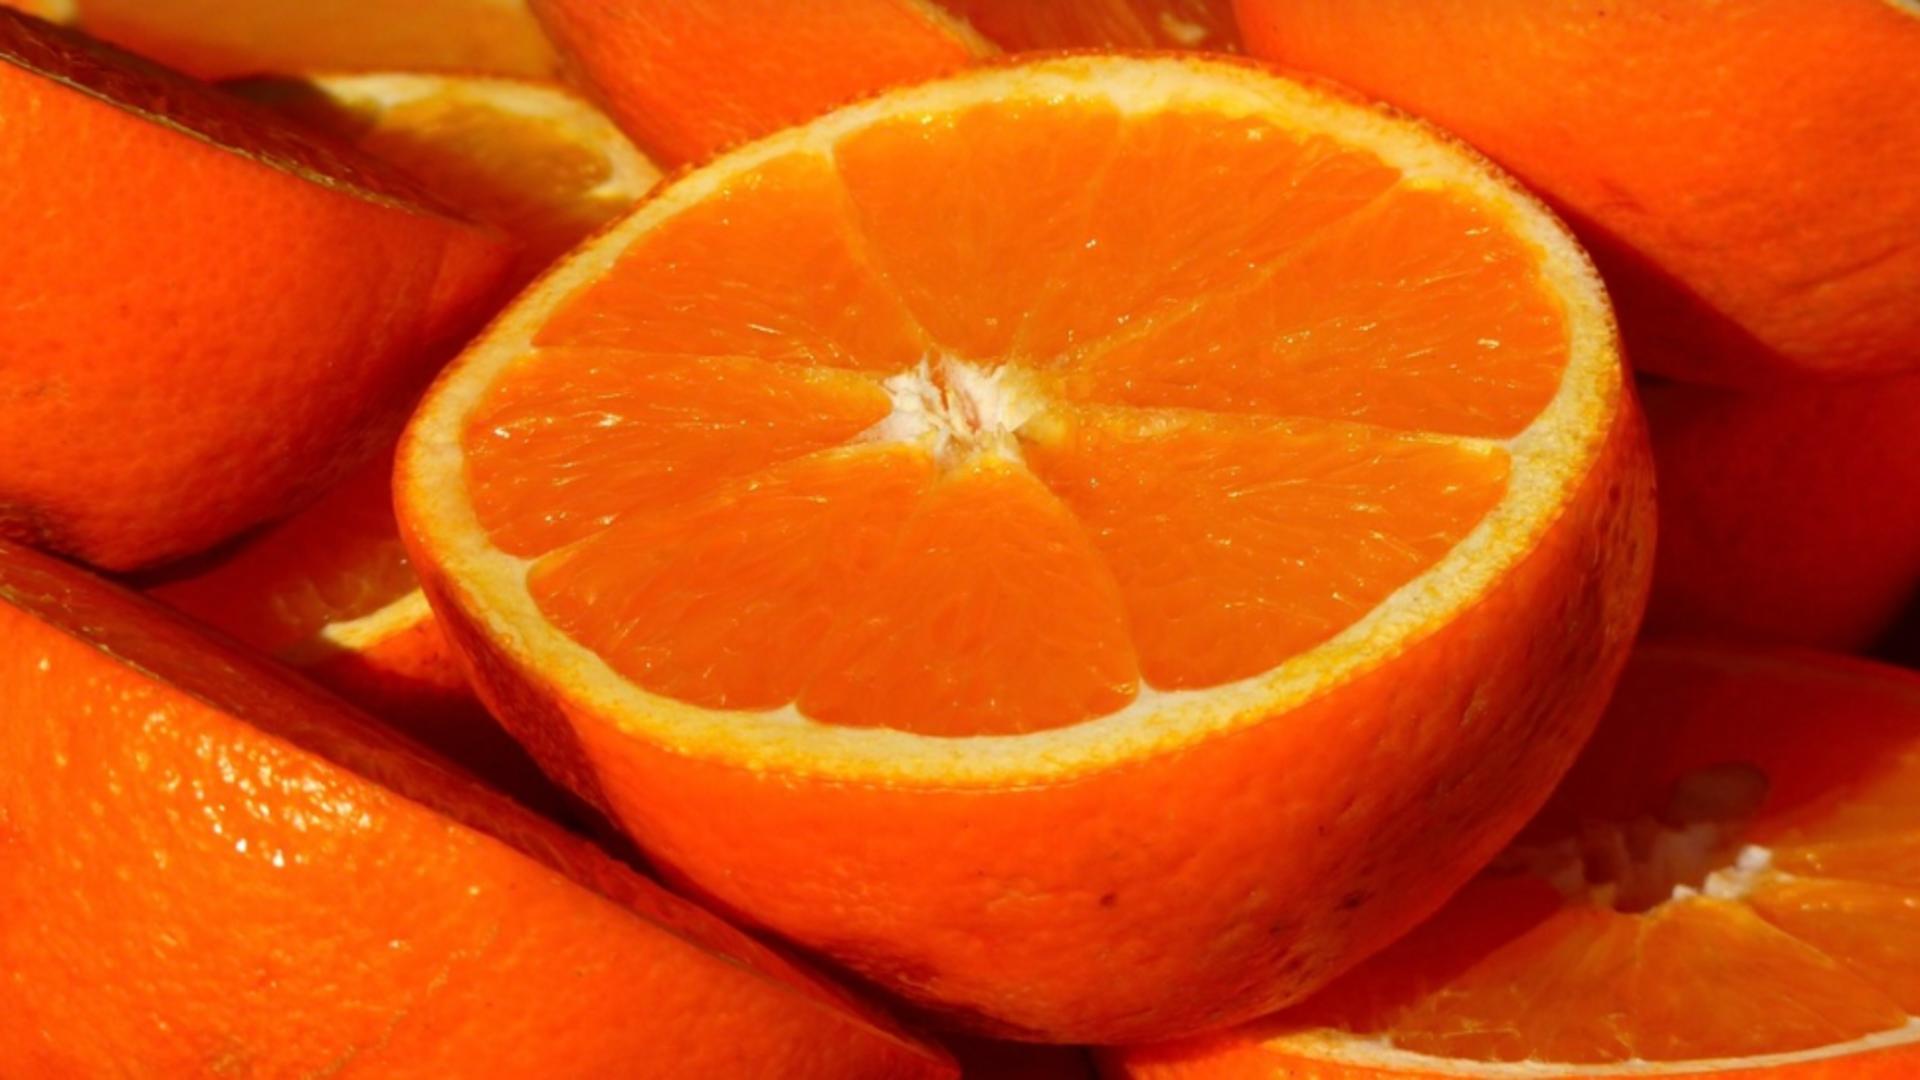 Nu mai mânca portocale dacă suferi de această boală! Pericolul ascuns din cele mai consumate fructe